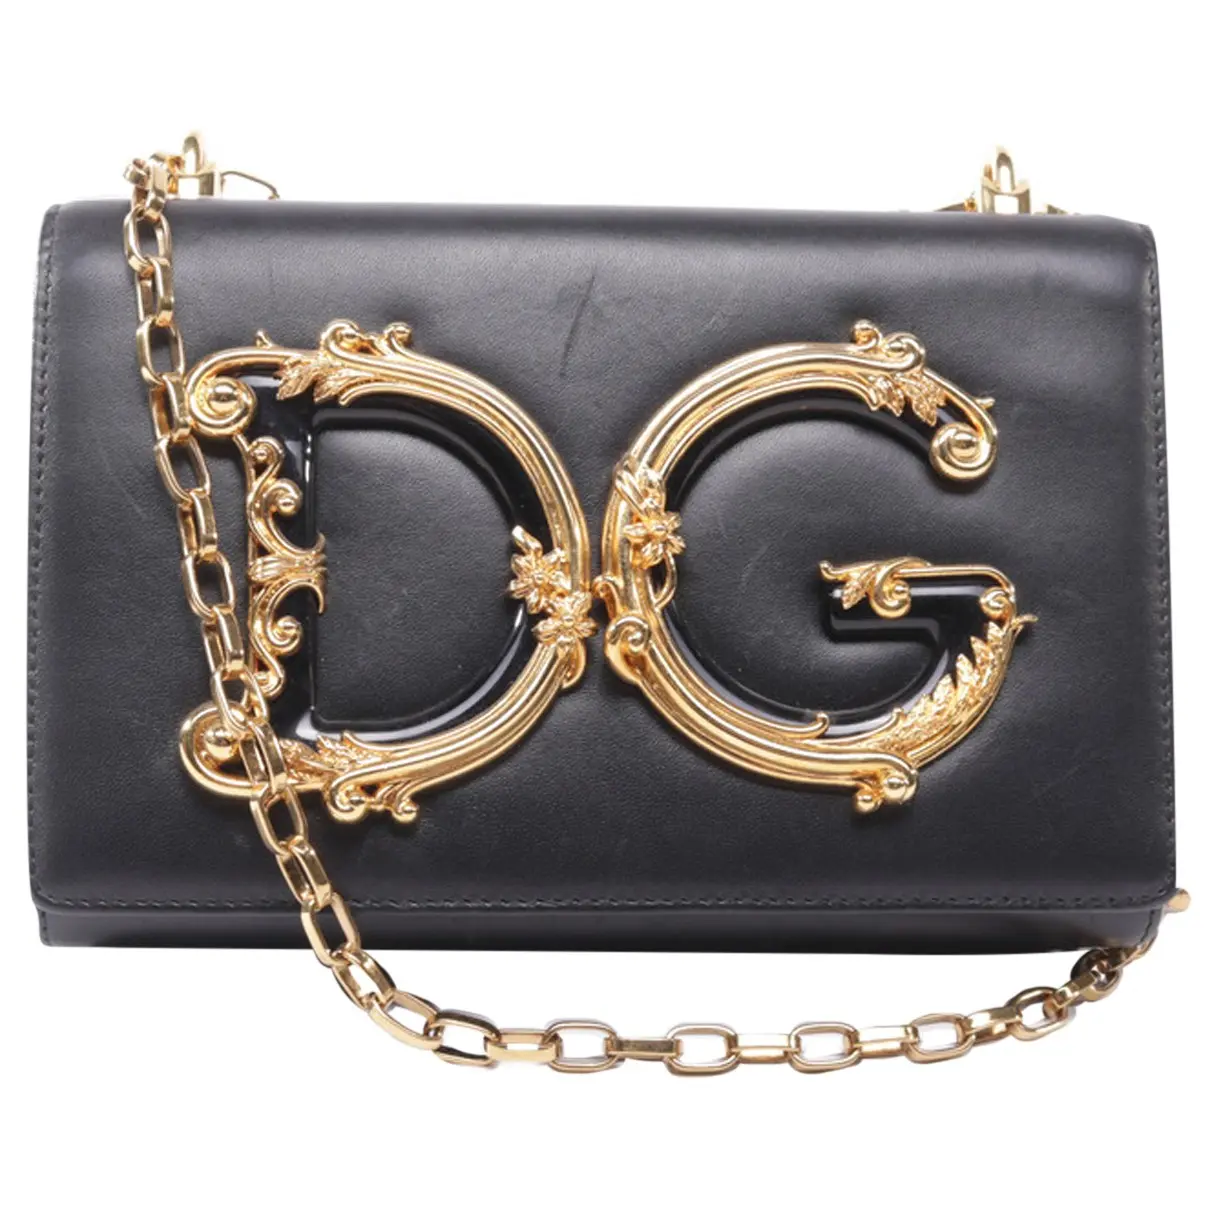 Leather bag Dolce & Gabbana